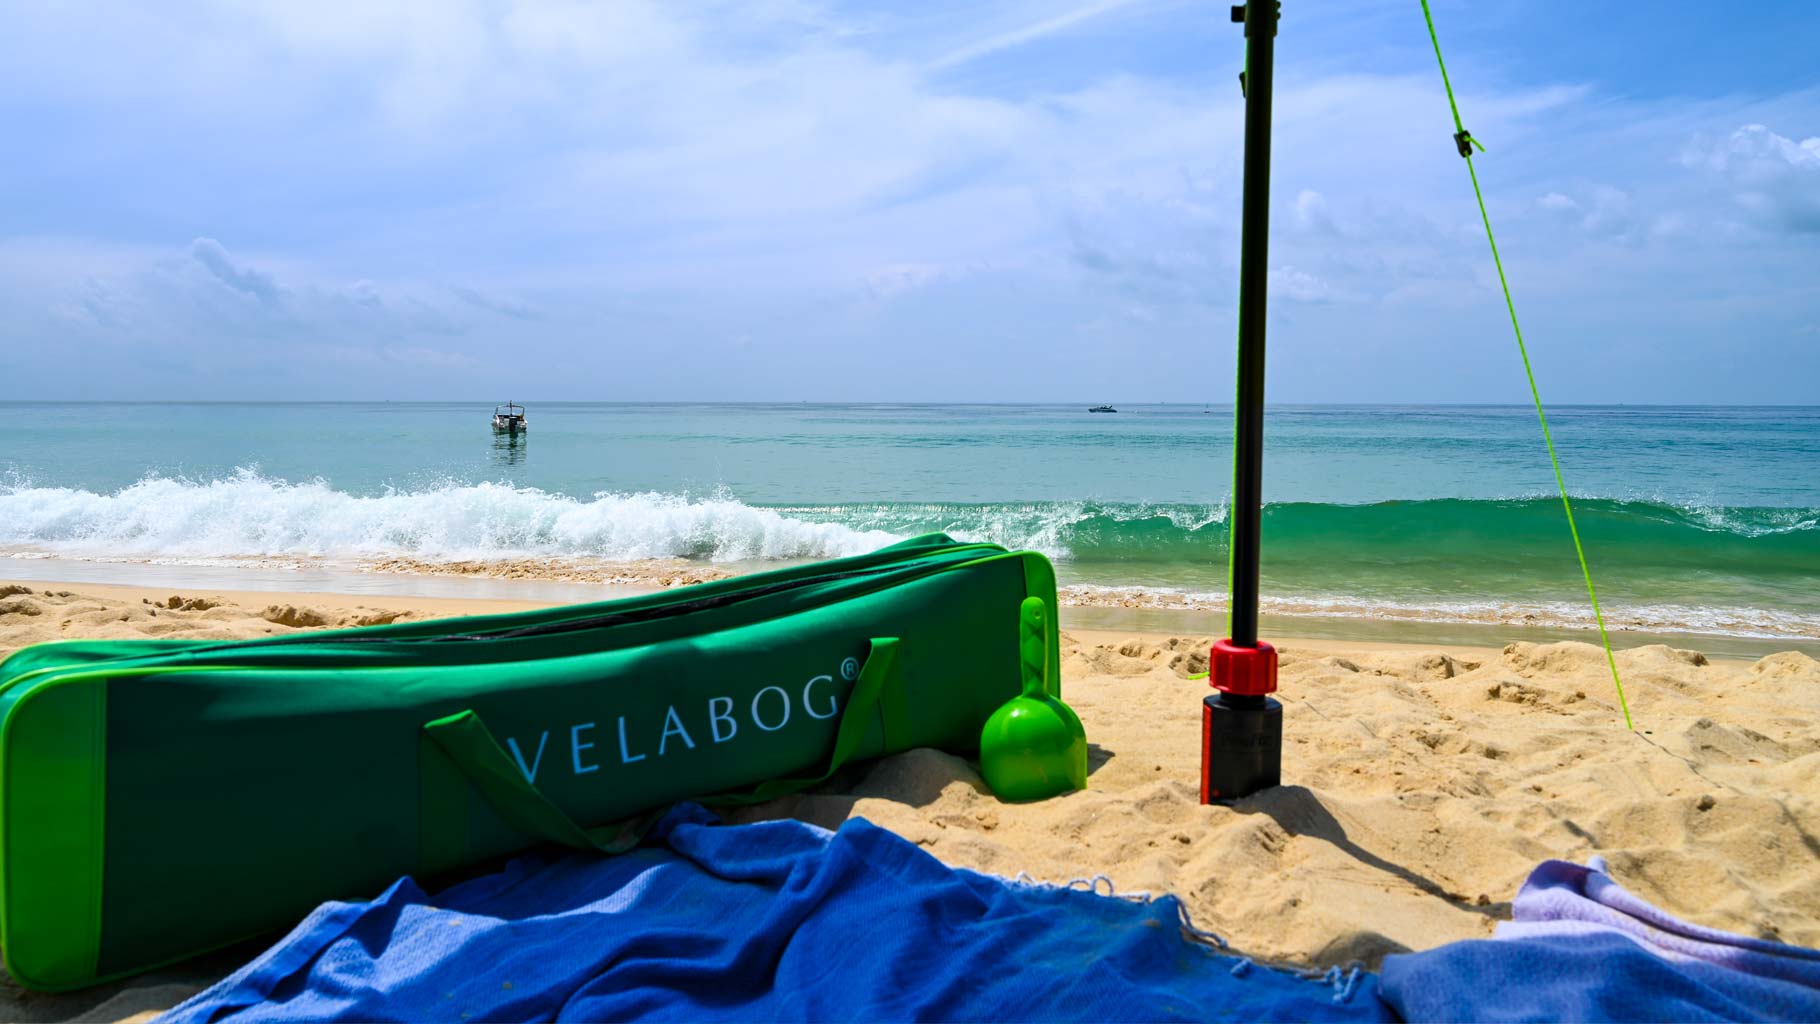 Bolsa de playa, verde, espaciosa y robusta para el transporte de toldos playa Velabog Breeze y mucho más, p. ej. toallas, etc.